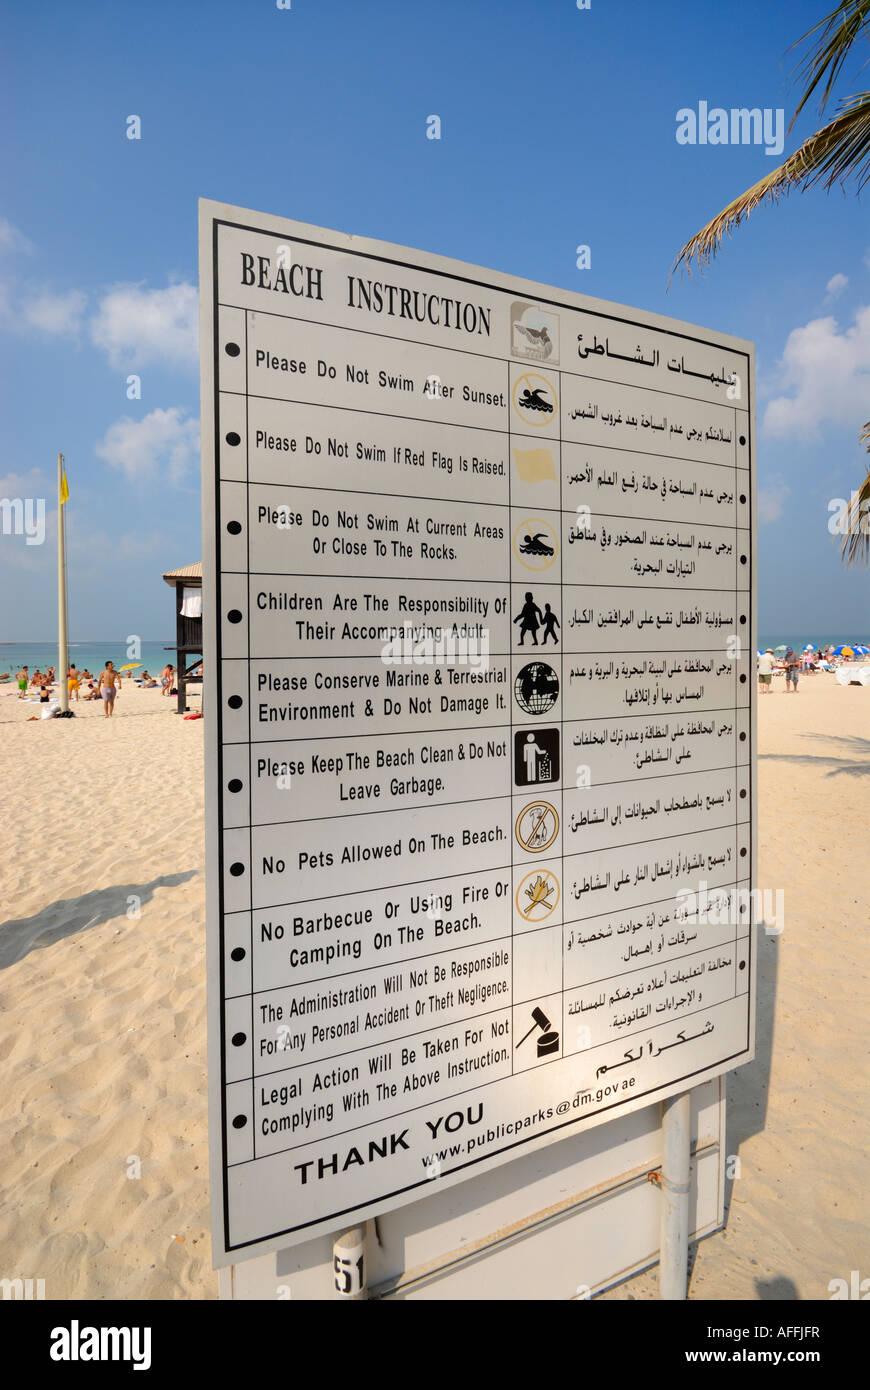 Istruzioni di spiaggia di cartello, Dubai, Emirati Arabi Uniti Foto Stock